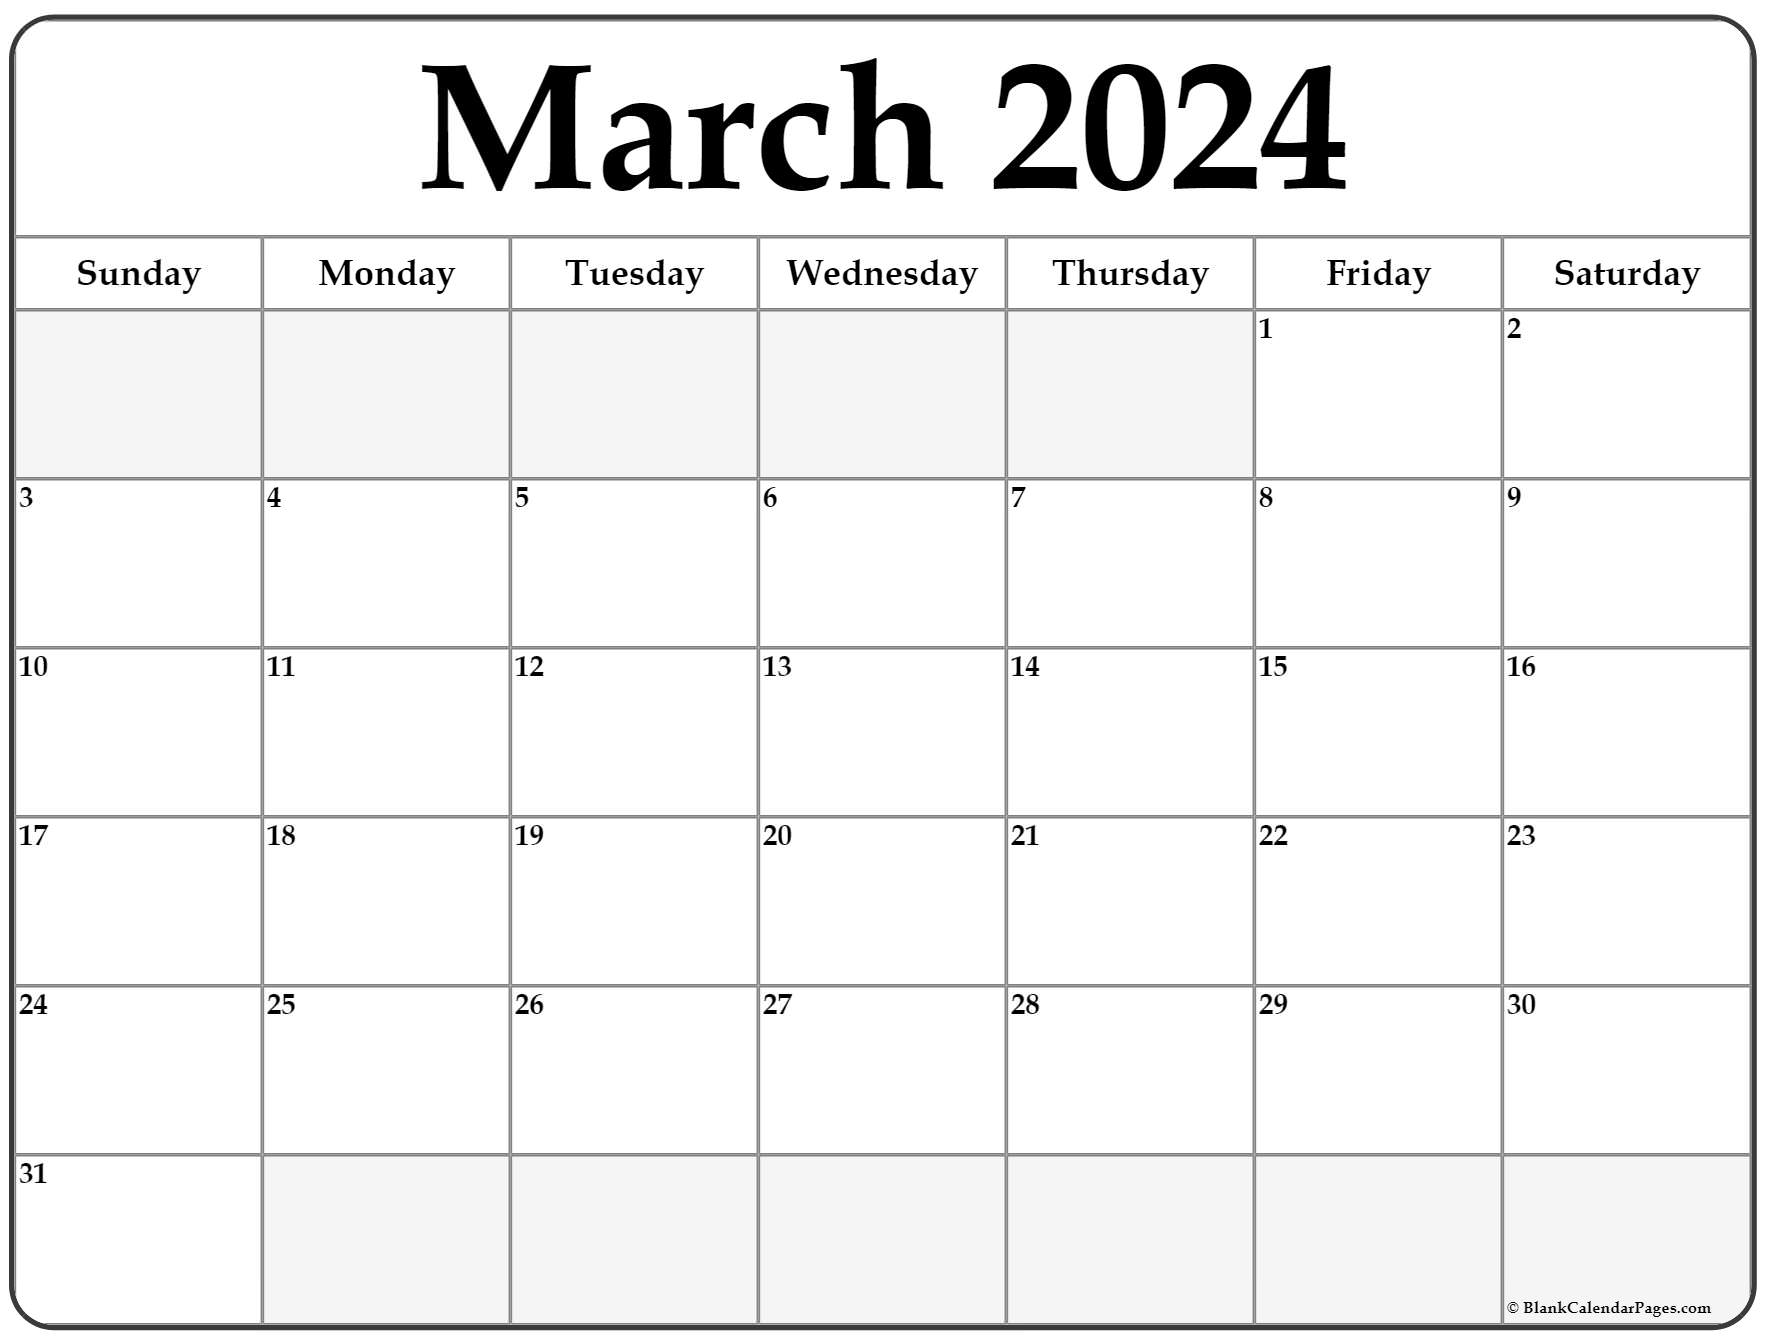 Editable Calendar March 2022 March 2022 Calendar | Free Printable Calendar Templates